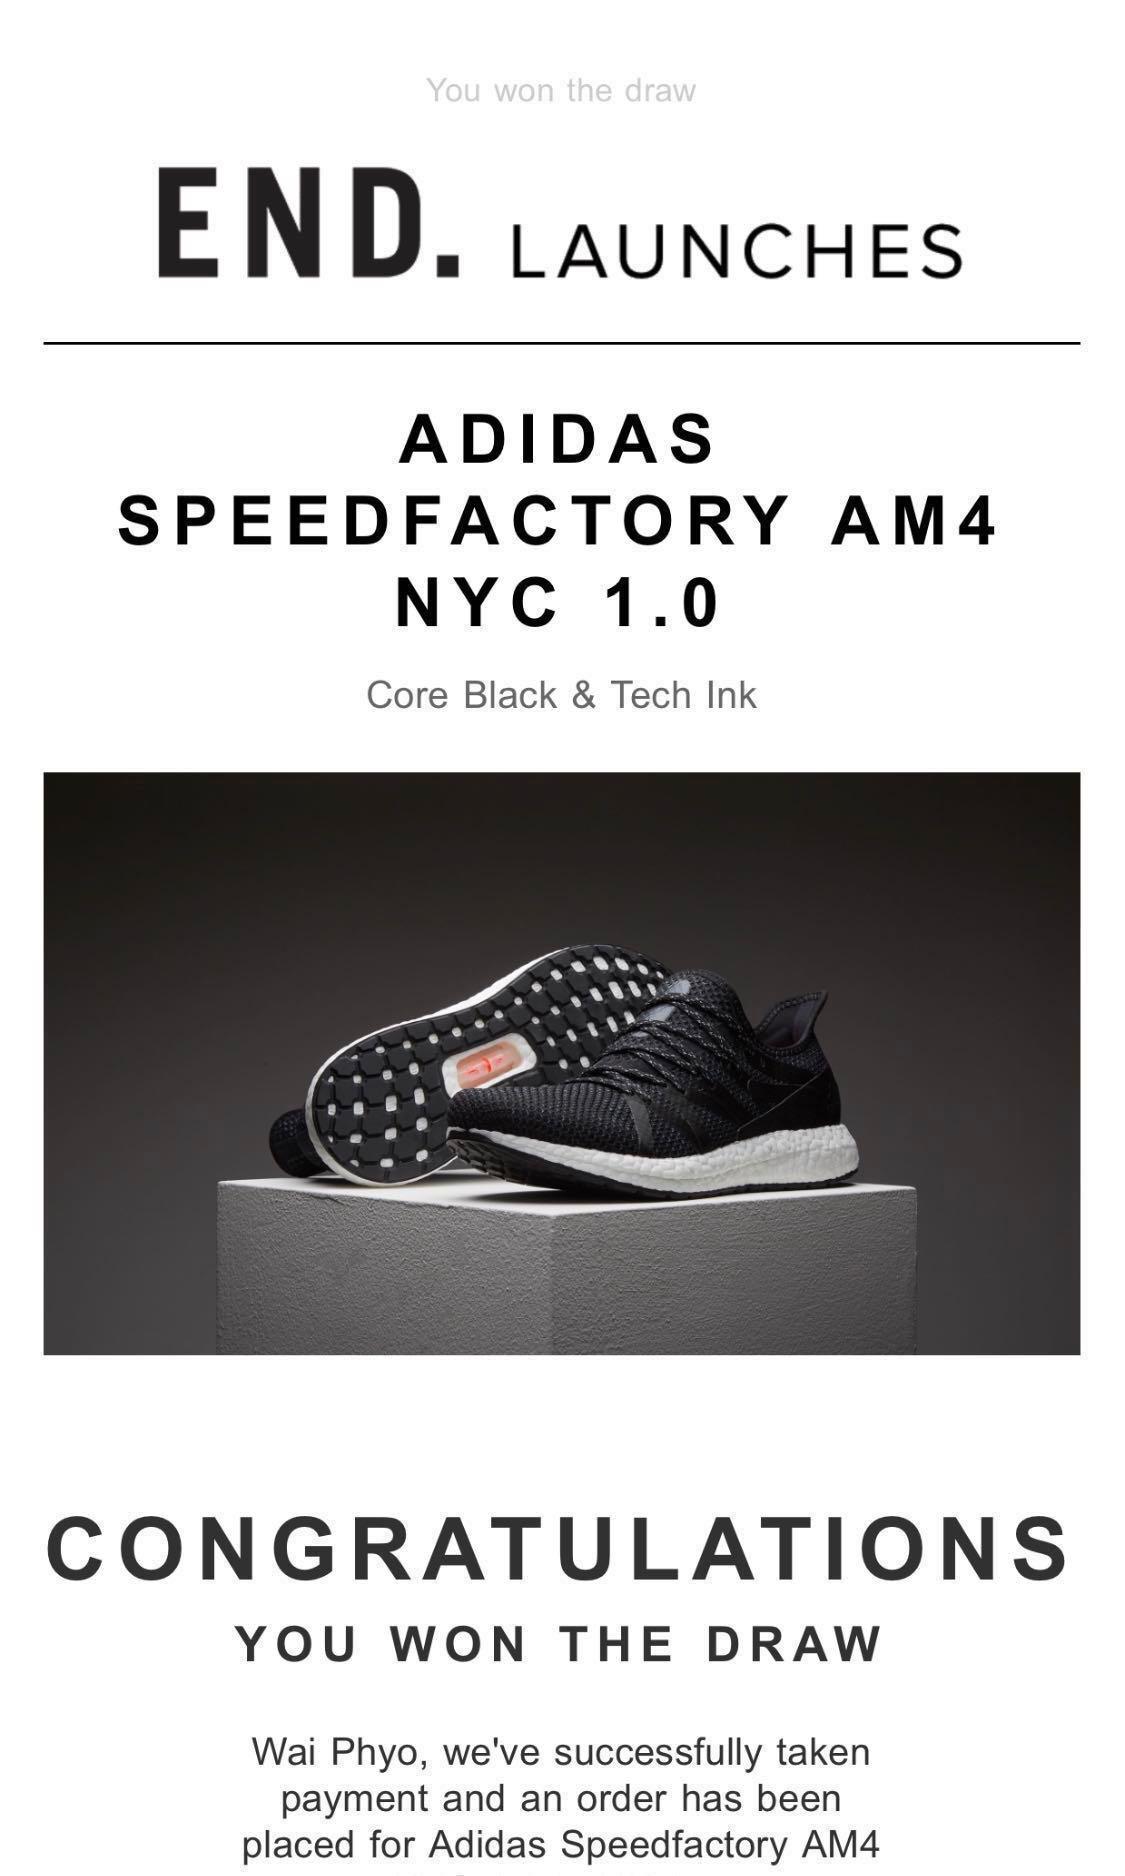 adidas speedfactory am4 nyc 1.0